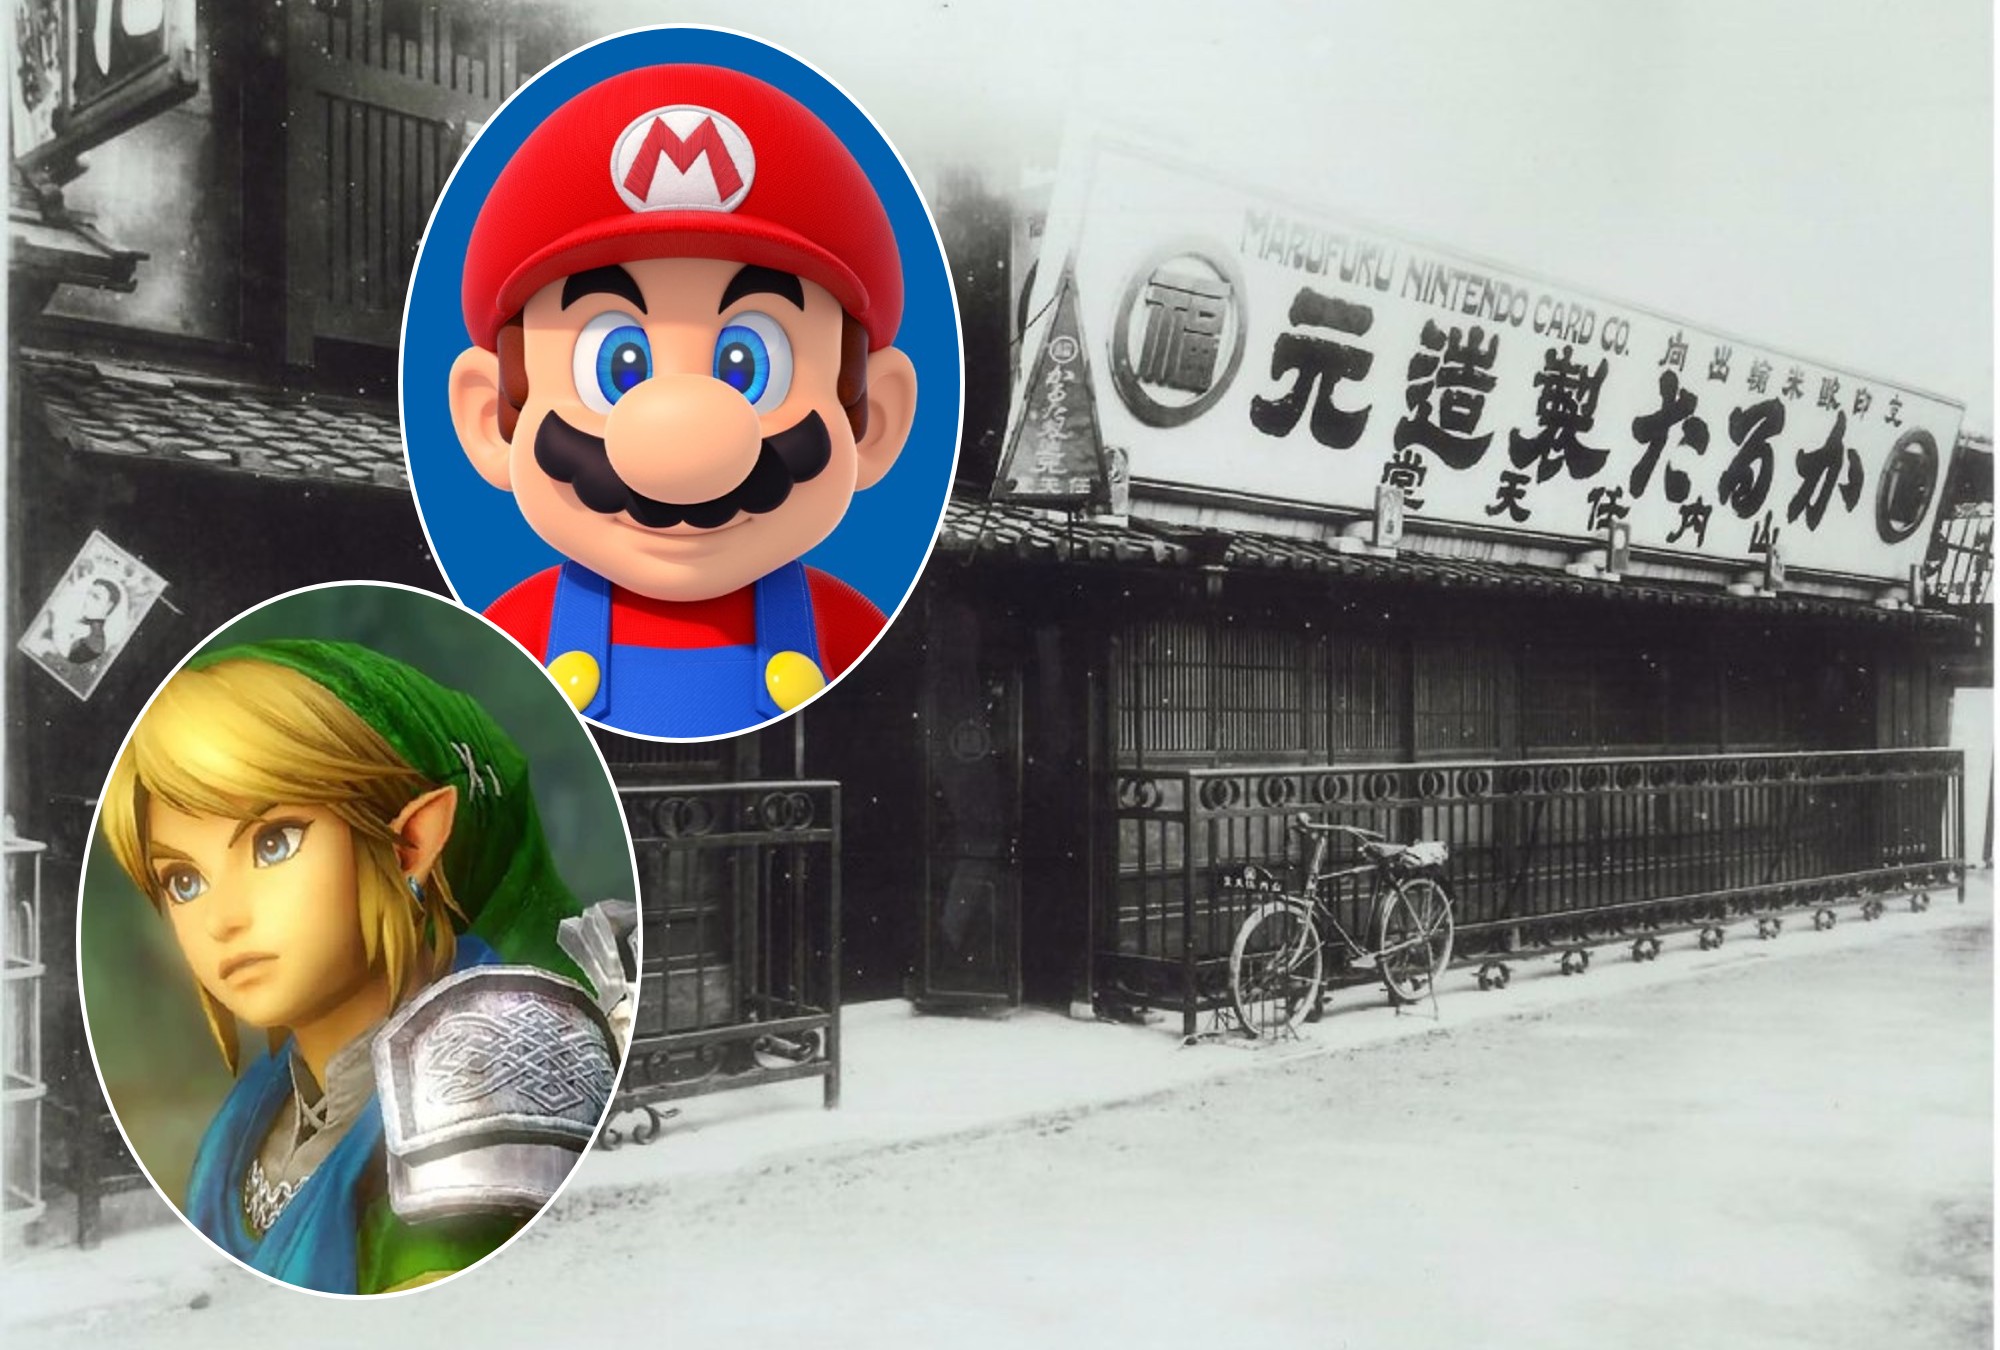 ¿Conoces la historia de empresas famosas como Nintendo?